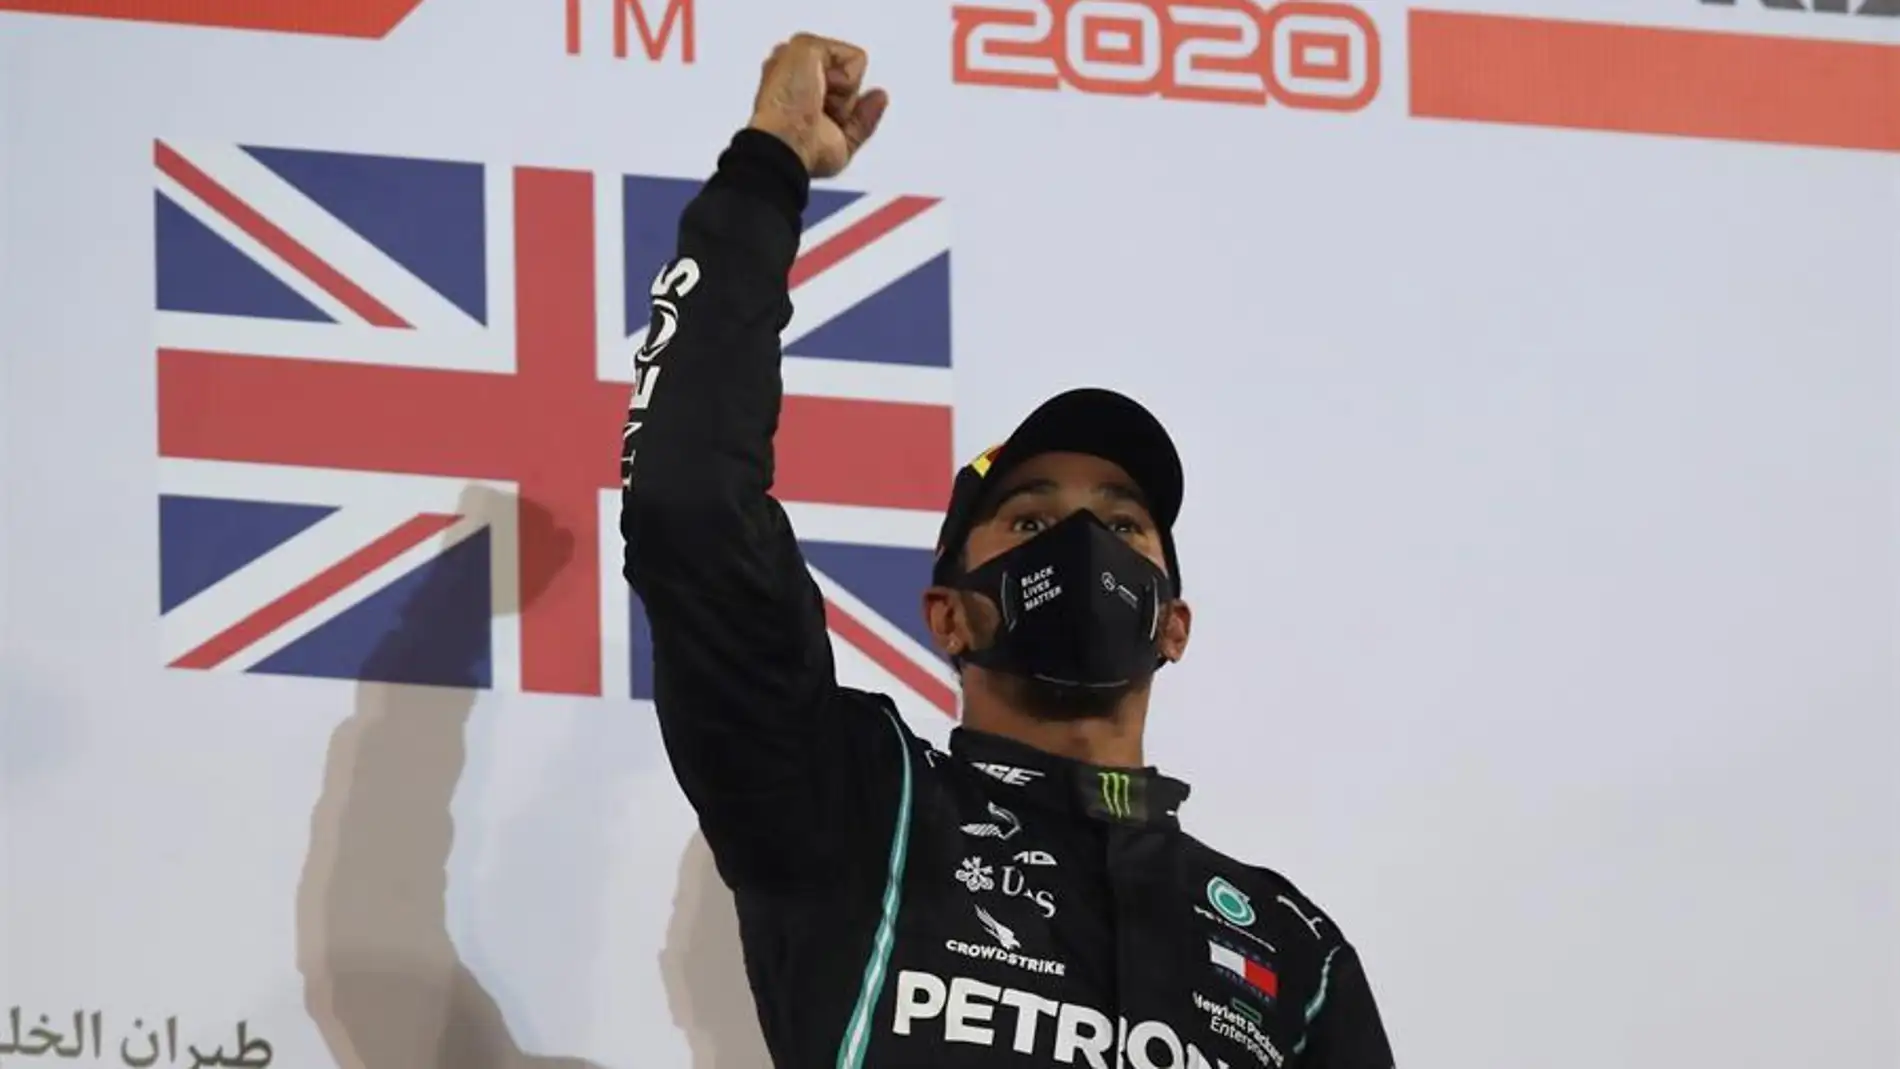  Baréin celebra el triunfo de Hamilton y el 'milagro' de Grosjean